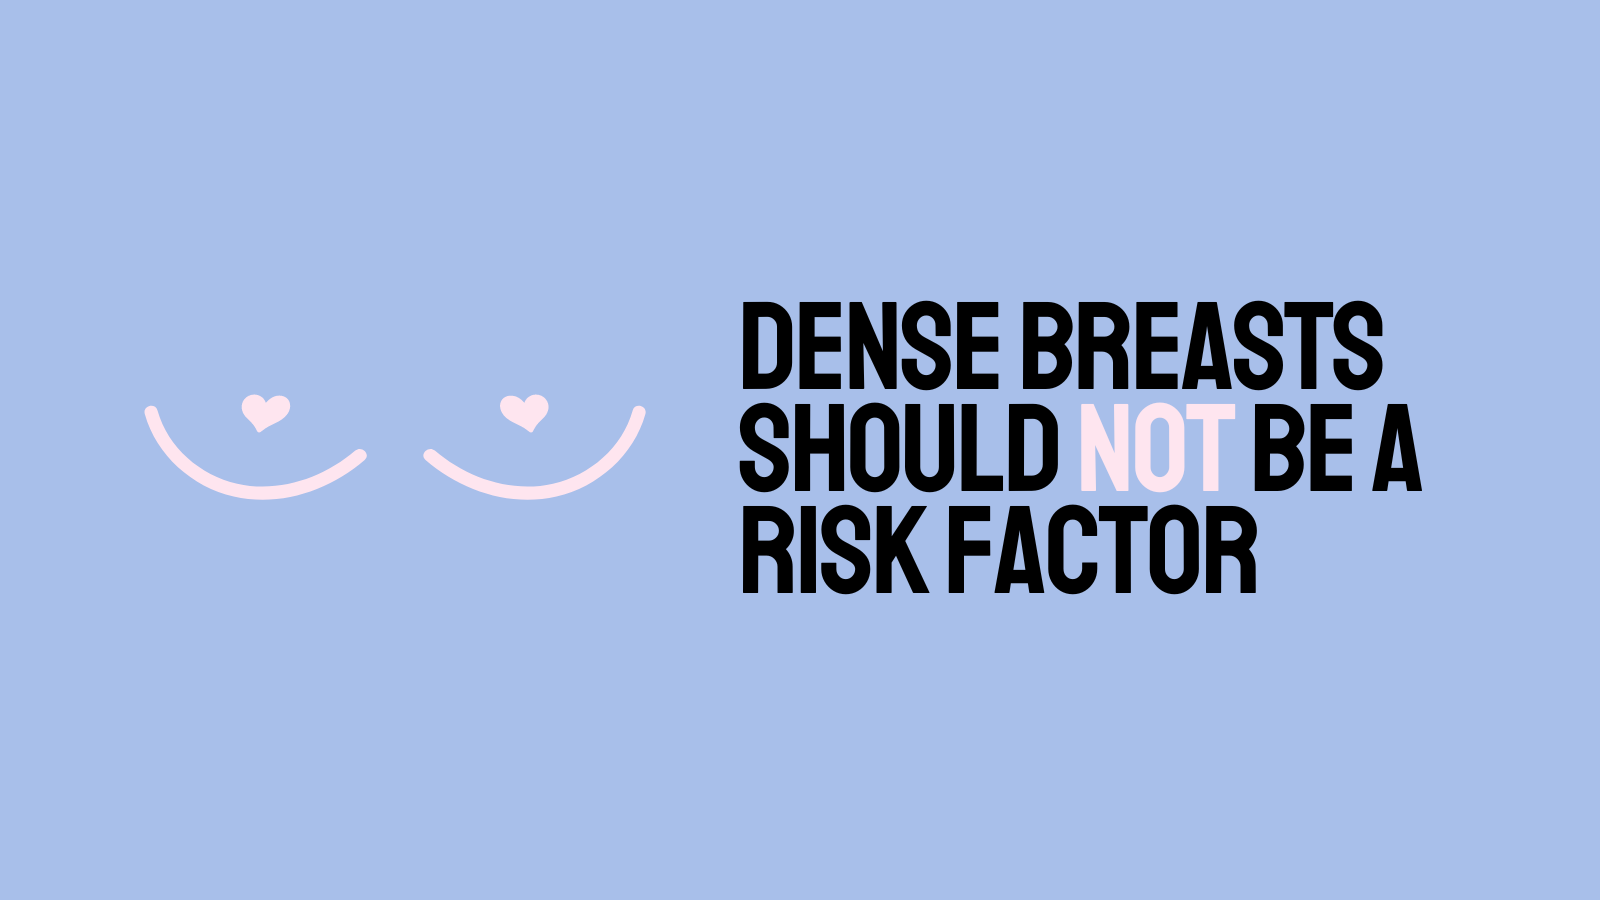 致密的乳房不应成为危险因素